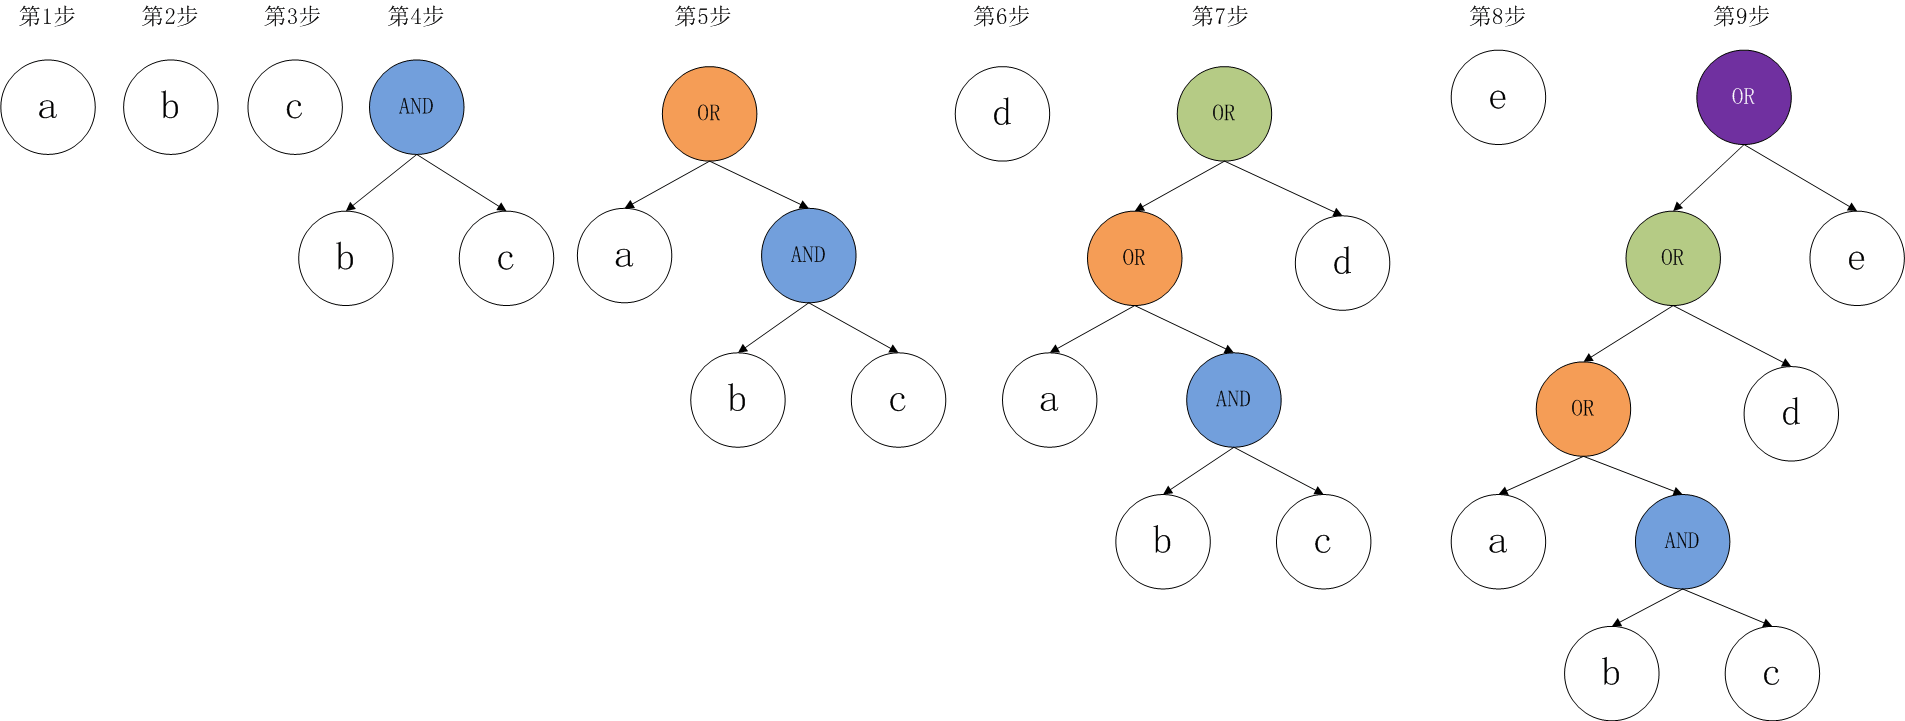 表达式二叉树构造顺序